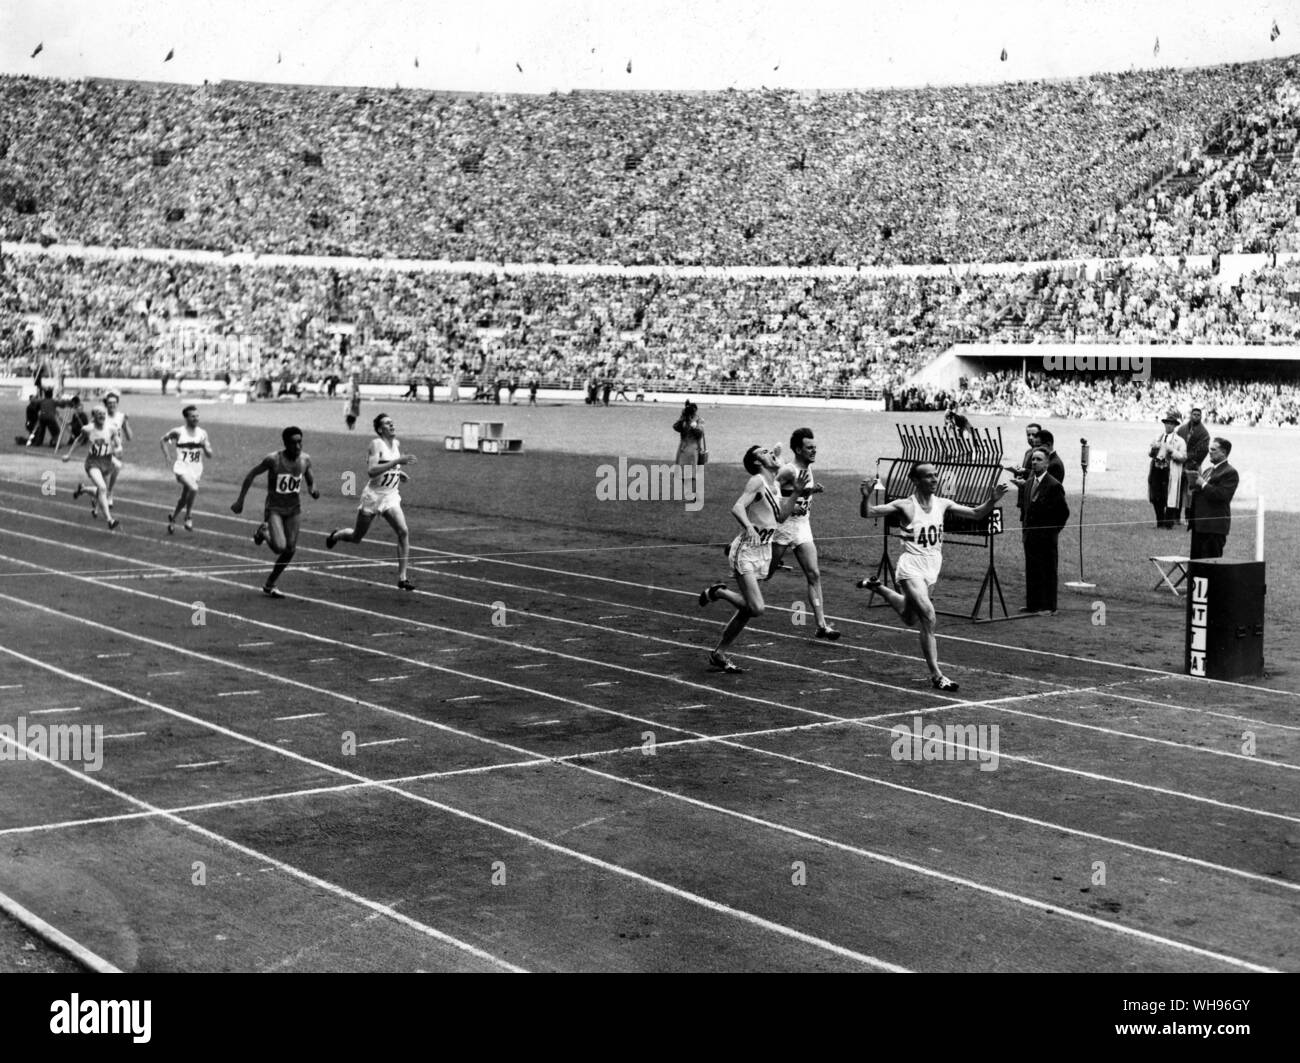 Finlandia,Helsinki/ Olimpiadi,1952: 1500 metri finali. Josef Barthel (Lussemburgo, ) ha vinto con Robert McMillen (USA, ) e Werner Lueg (Germania, ) provenienti rispettivamente secondo e terzo. In quarta è stato Roger Bannister (Gran Bretagna). Foto Stock